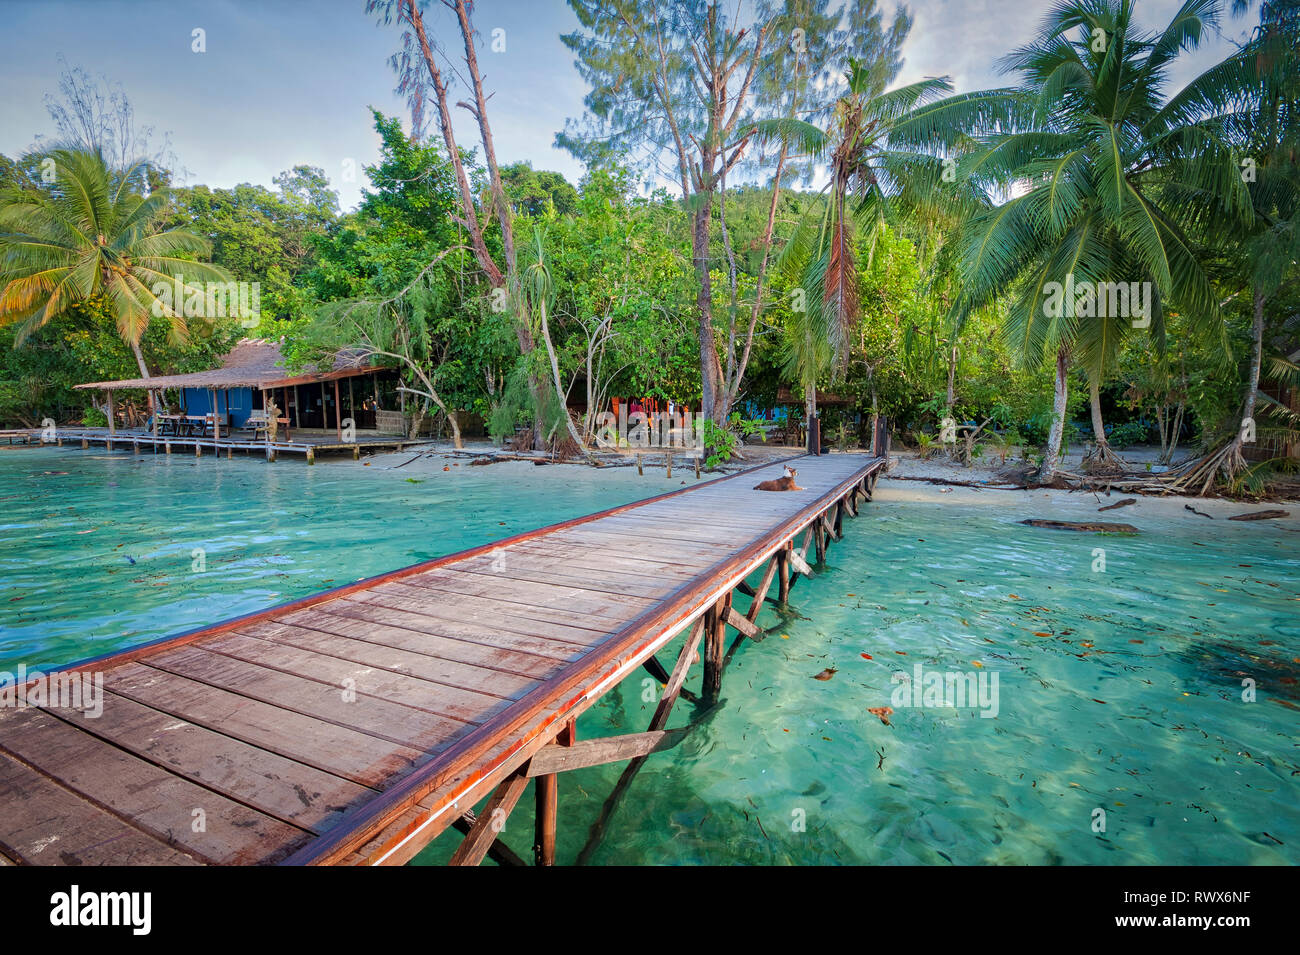 Yenkoranu Homestay on Pulau Kri, Raja Ampat, Indonesia Stock Photo